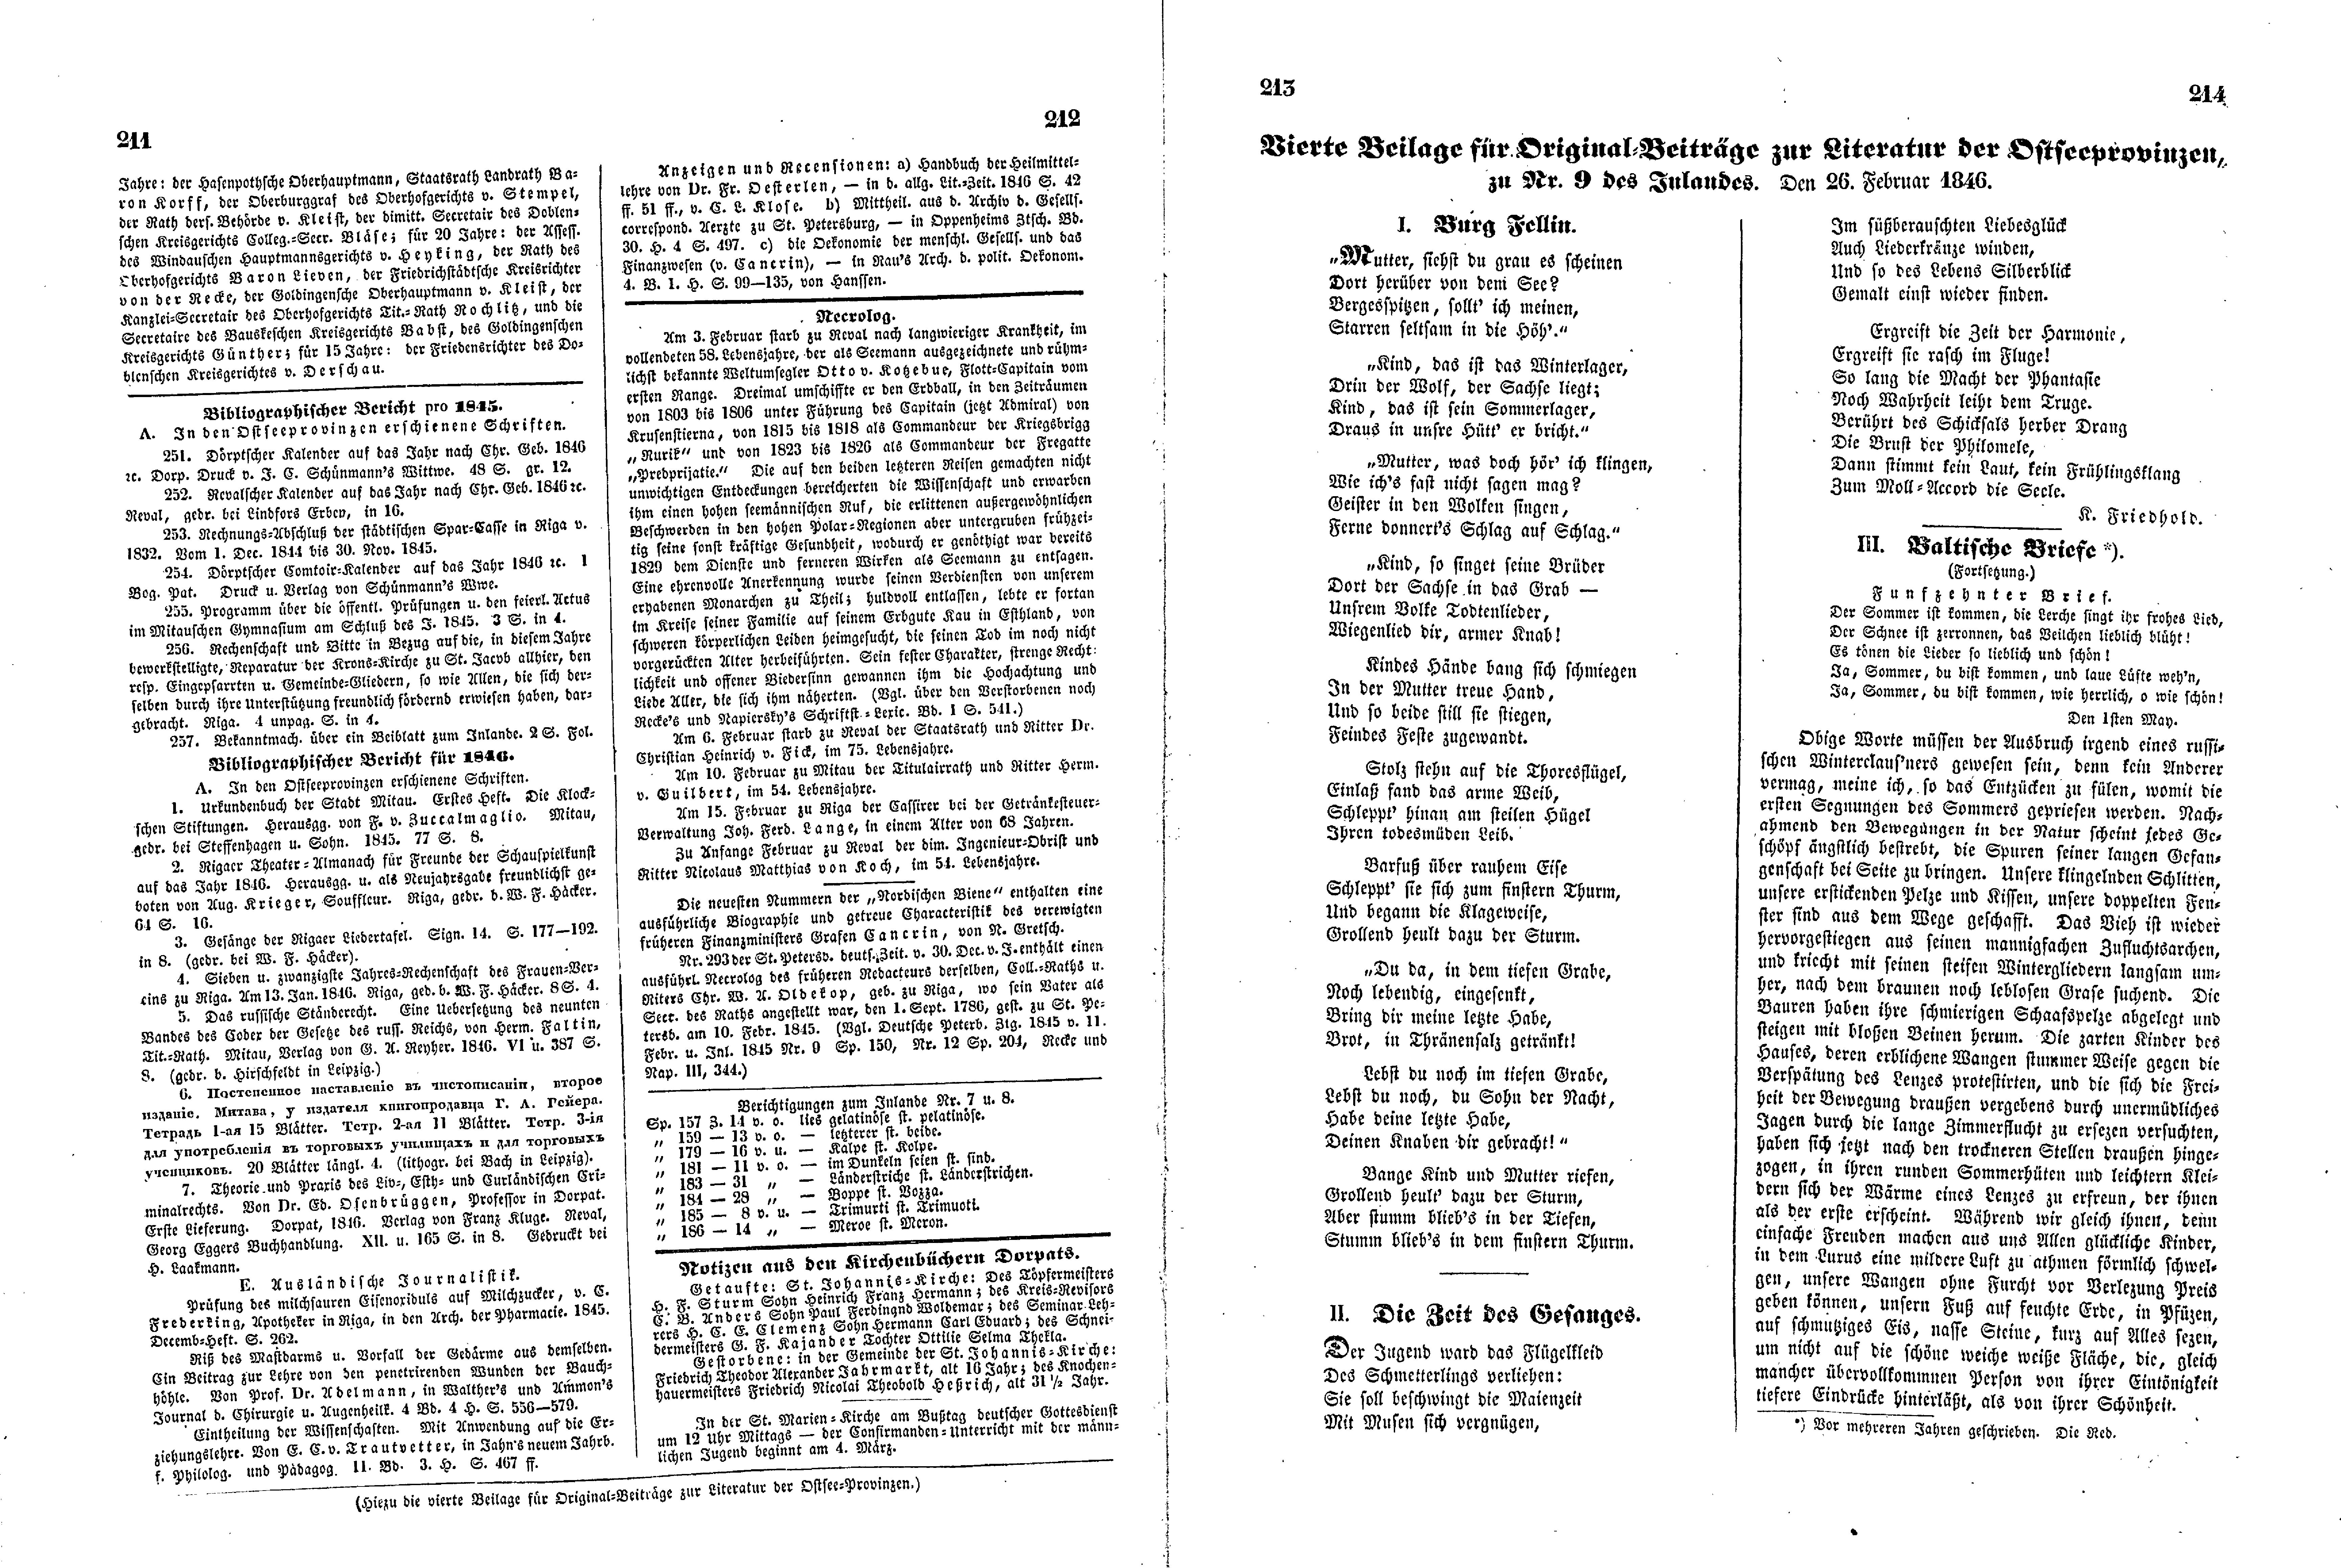 Das Inland [11] (1846) | 58. (211-214) Haupttext